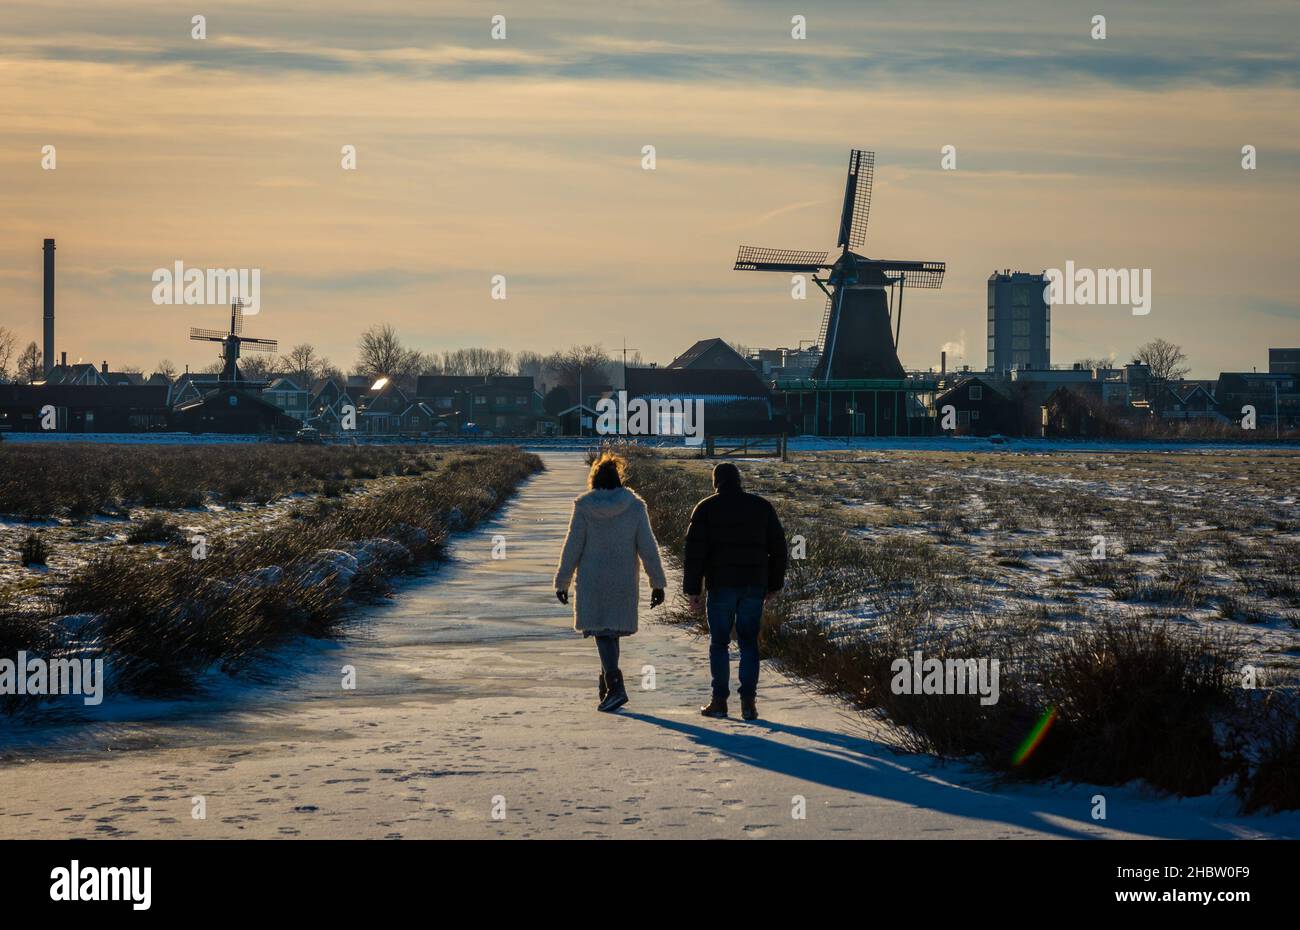 L'hiver, on peut se promener sur les canaux gelés autour des moulins à vent historiques hollandais de Zaanse Schans Banque D'Images